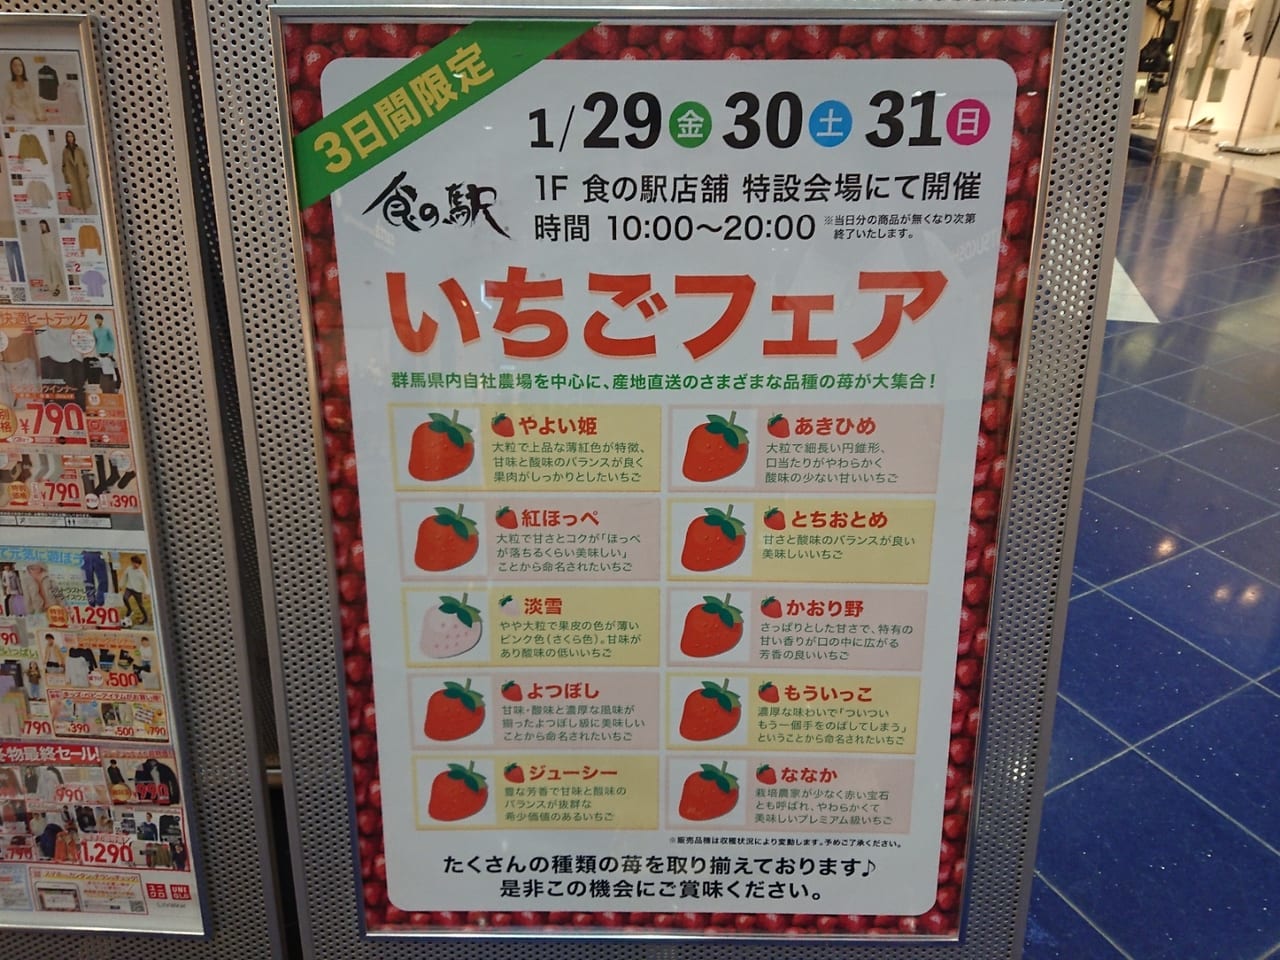 スマーク伊勢崎『食の駅』にて3日間限定のいちごフェアを実施